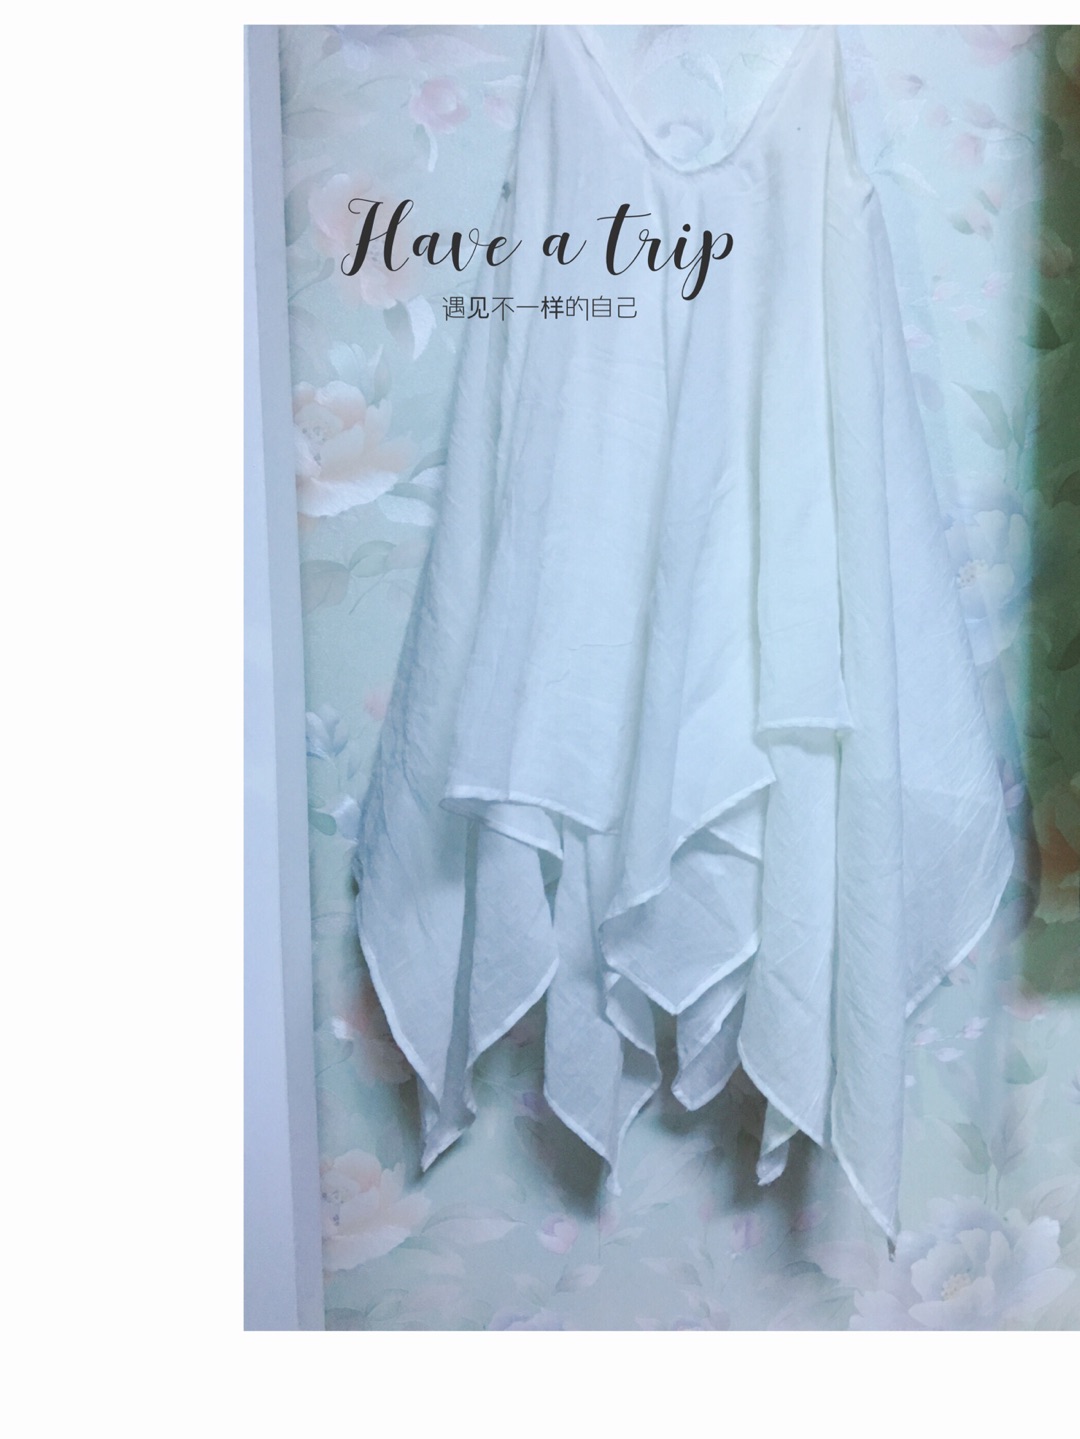 学了一条吊带裙的做法，因为很简单，效果却不错，所以就分享下，在制作过程中没怎么拍照，所以我用纸来演示，感觉更直观吧，有问题可以留言